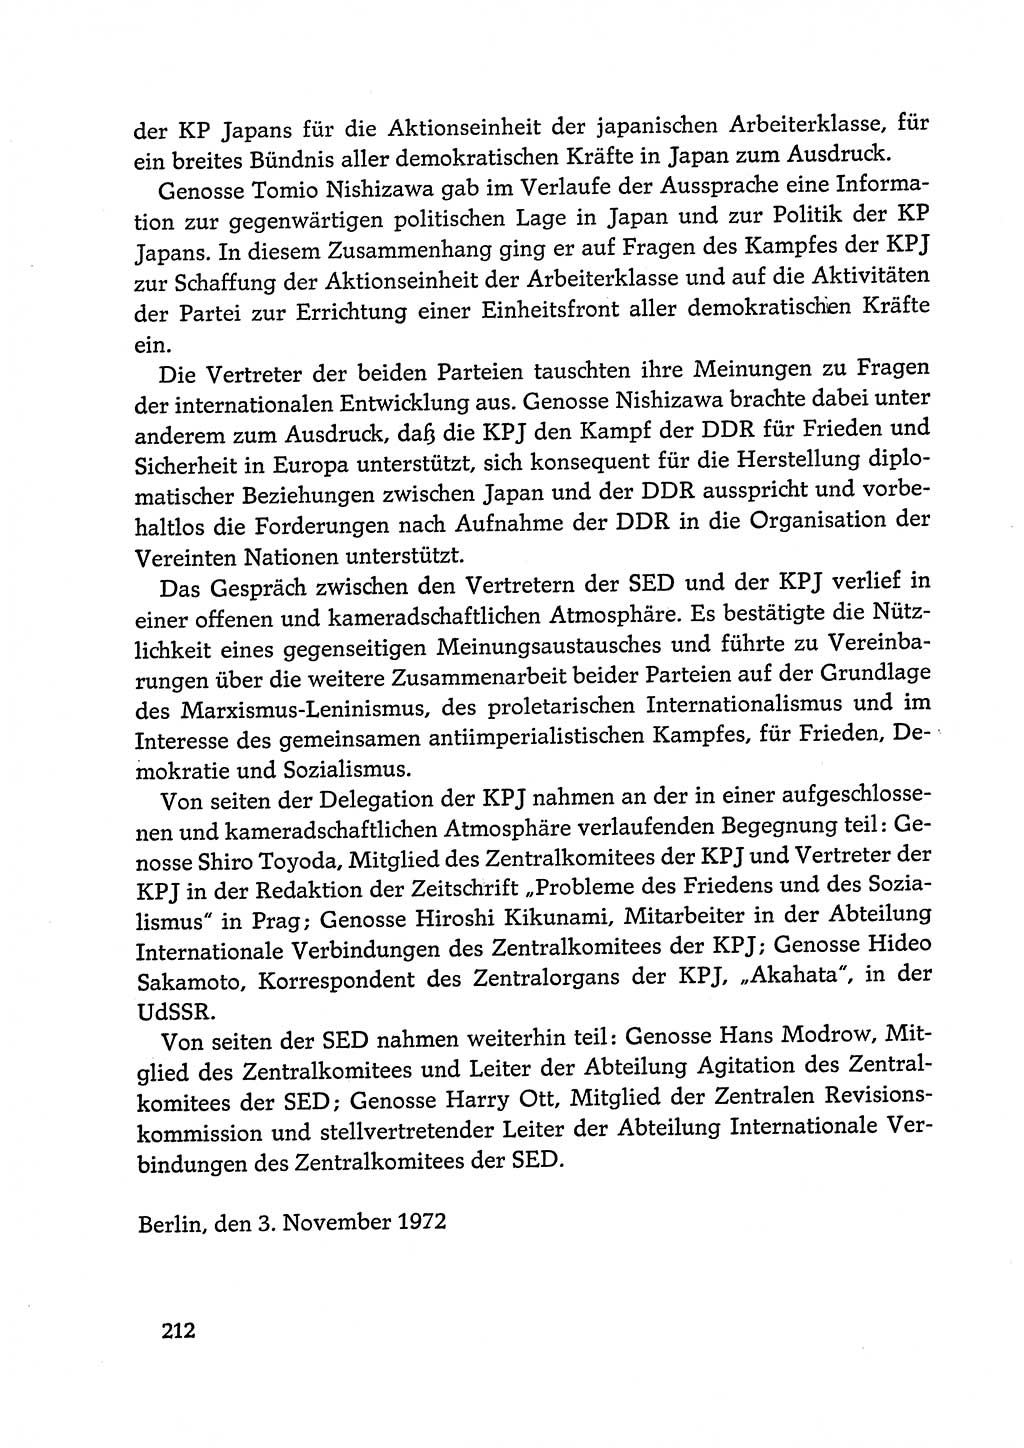 Dokumente der Sozialistischen Einheitspartei Deutschlands (SED) [Deutsche Demokratische Republik (DDR)] 1972-1973, Seite 212 (Dok. SED DDR 1972-1973, S. 212)